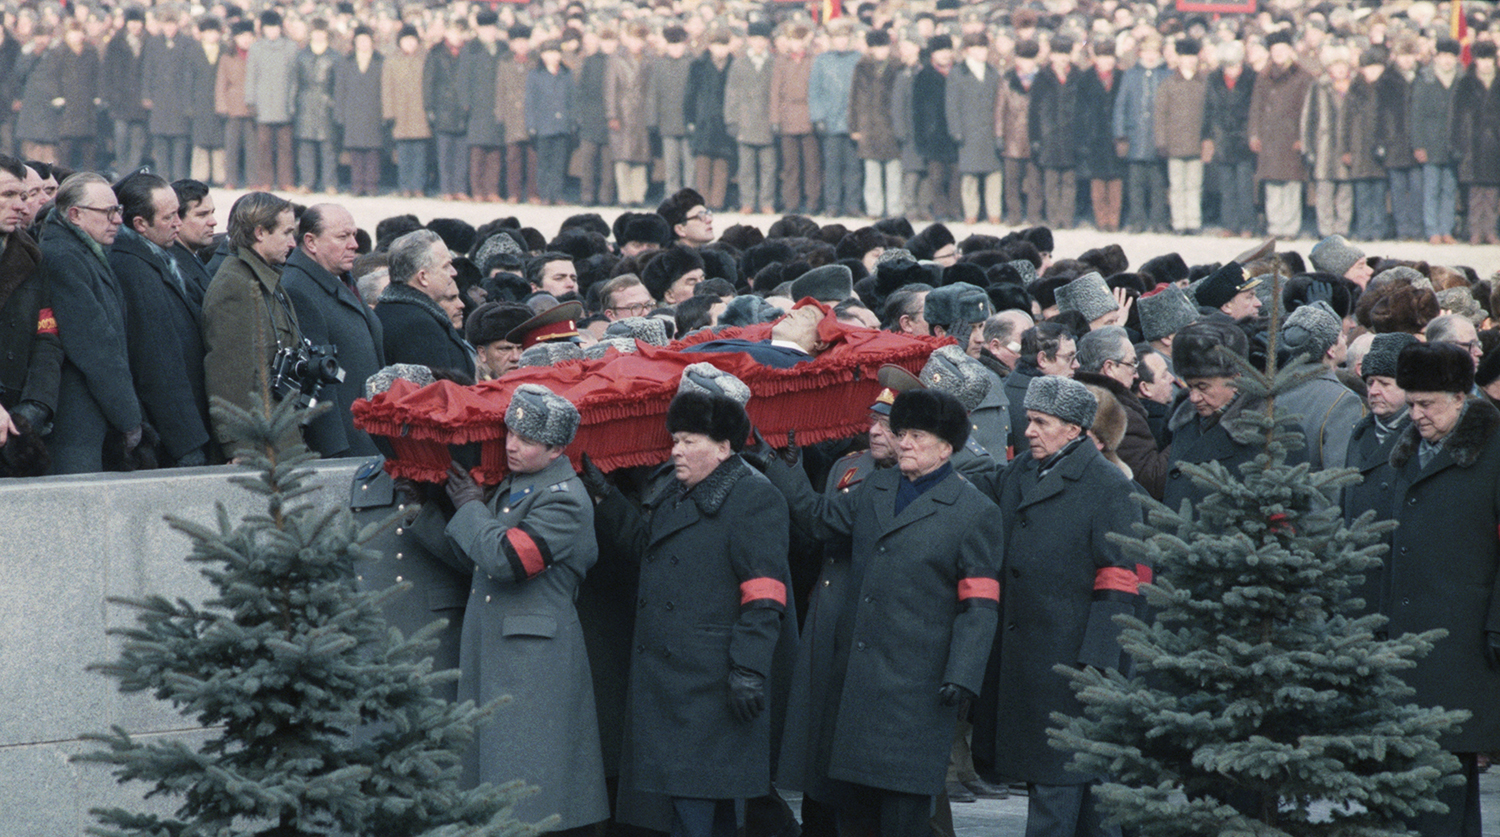 Площадь прощания. Брежнев 1982 похороны. Похороны Андропова 1984.